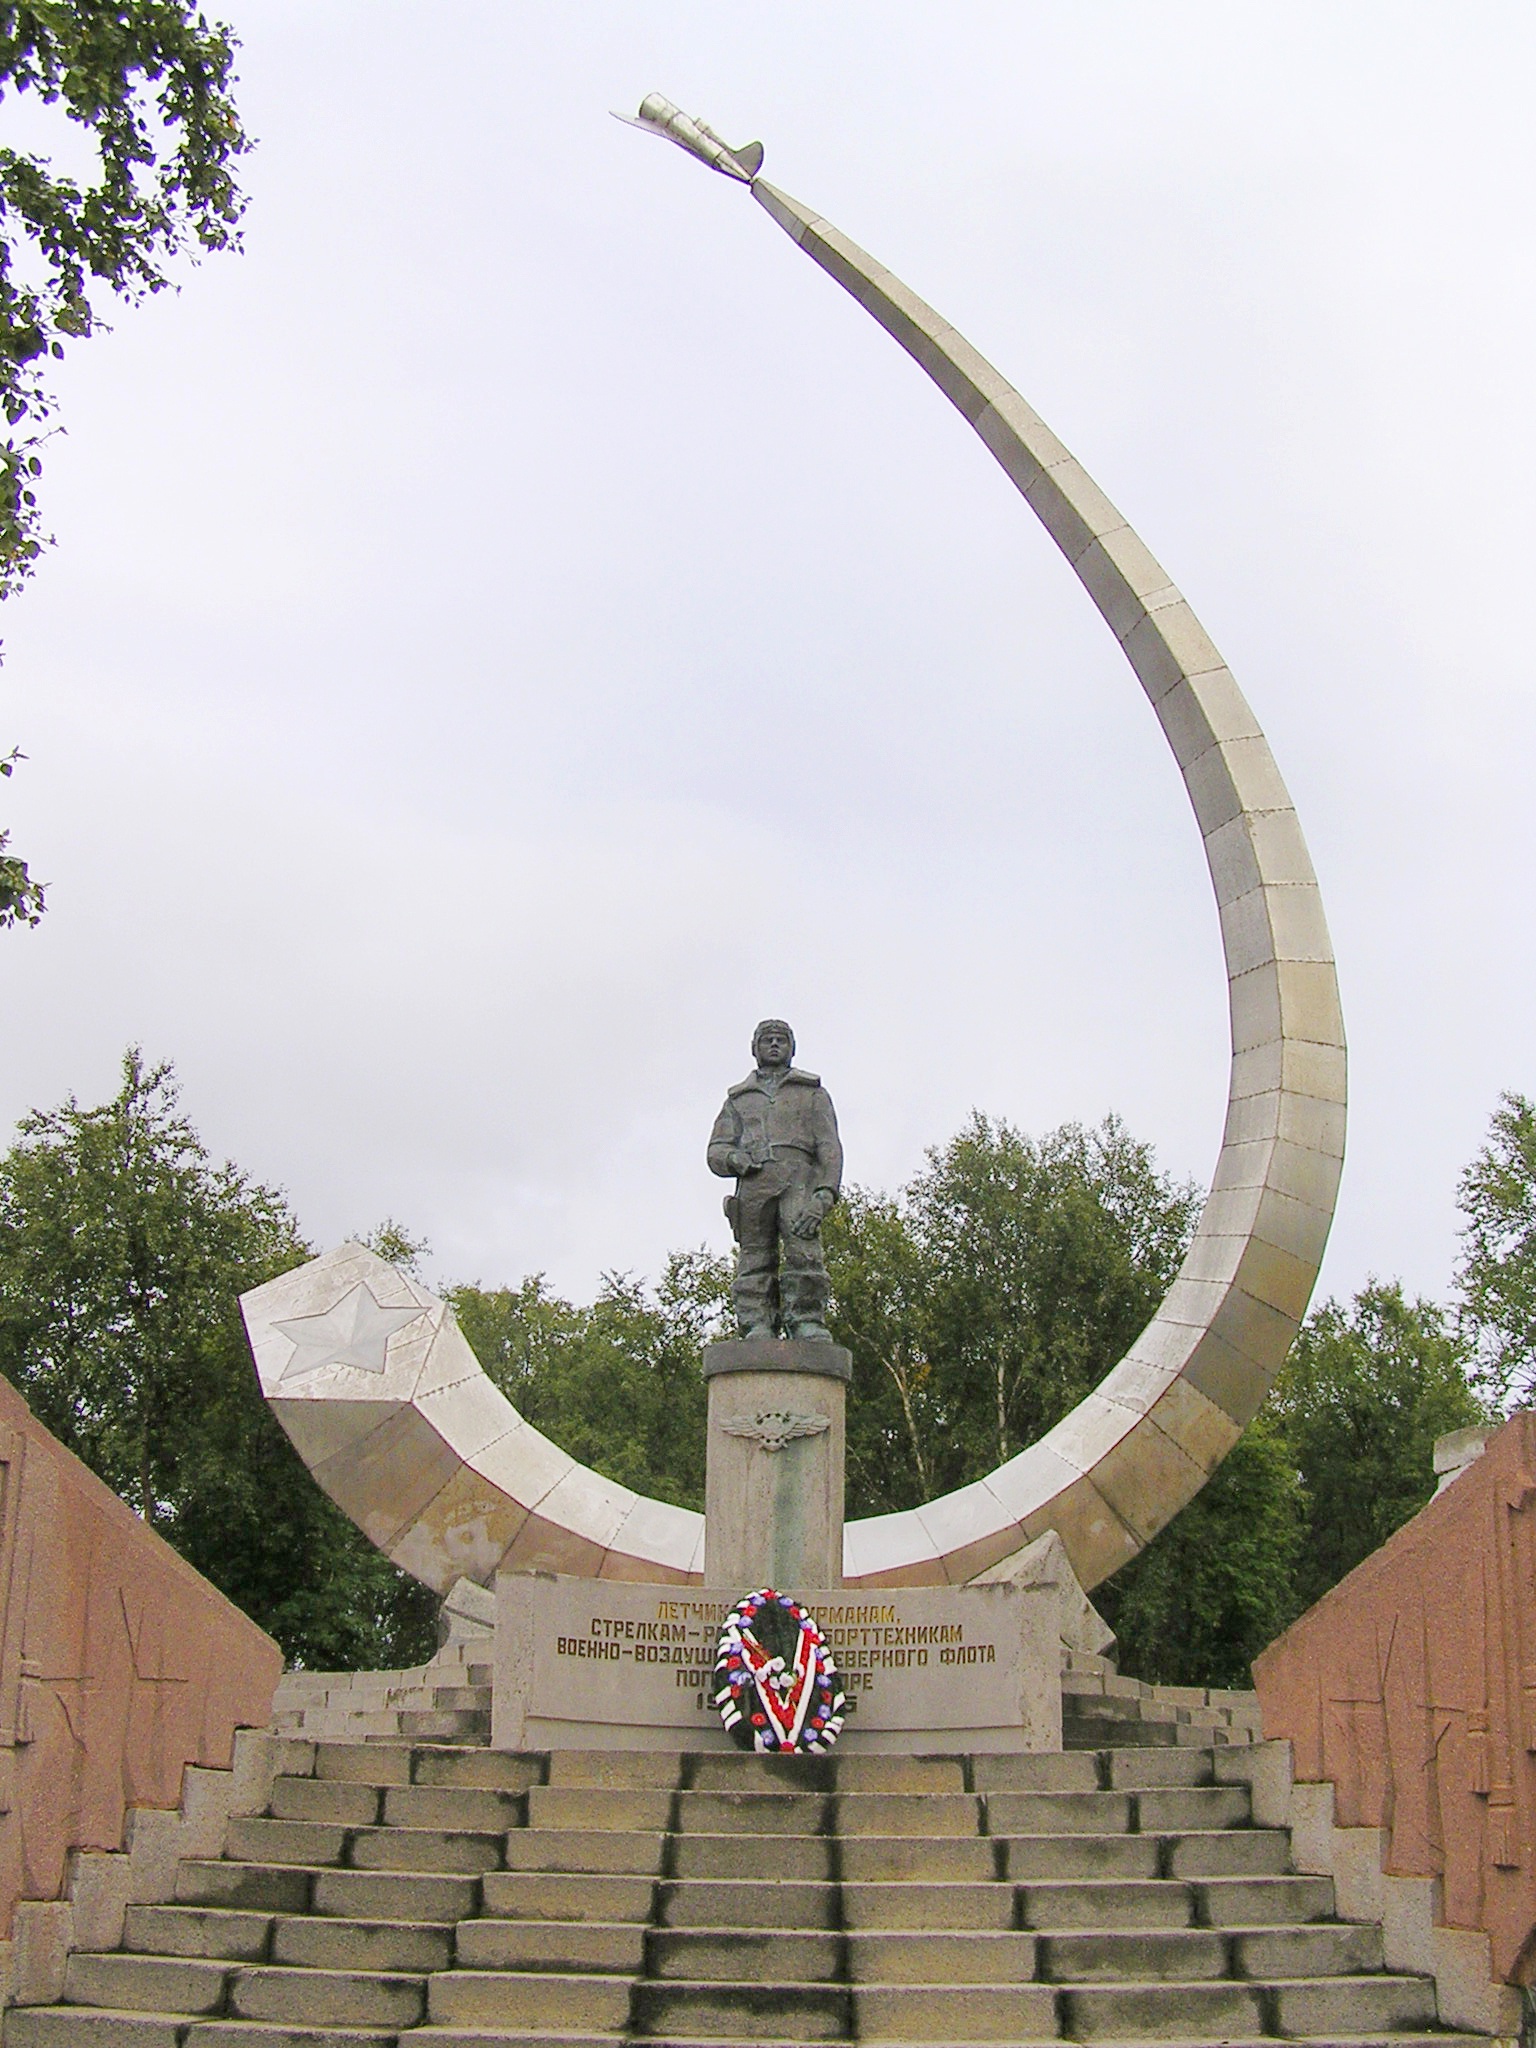 Мемориал авиаторам-североморцам, погибшим в море. Открыт 17 августа 1986 года в пос. Сафоново. Скульптор Э.И. Китайчук.